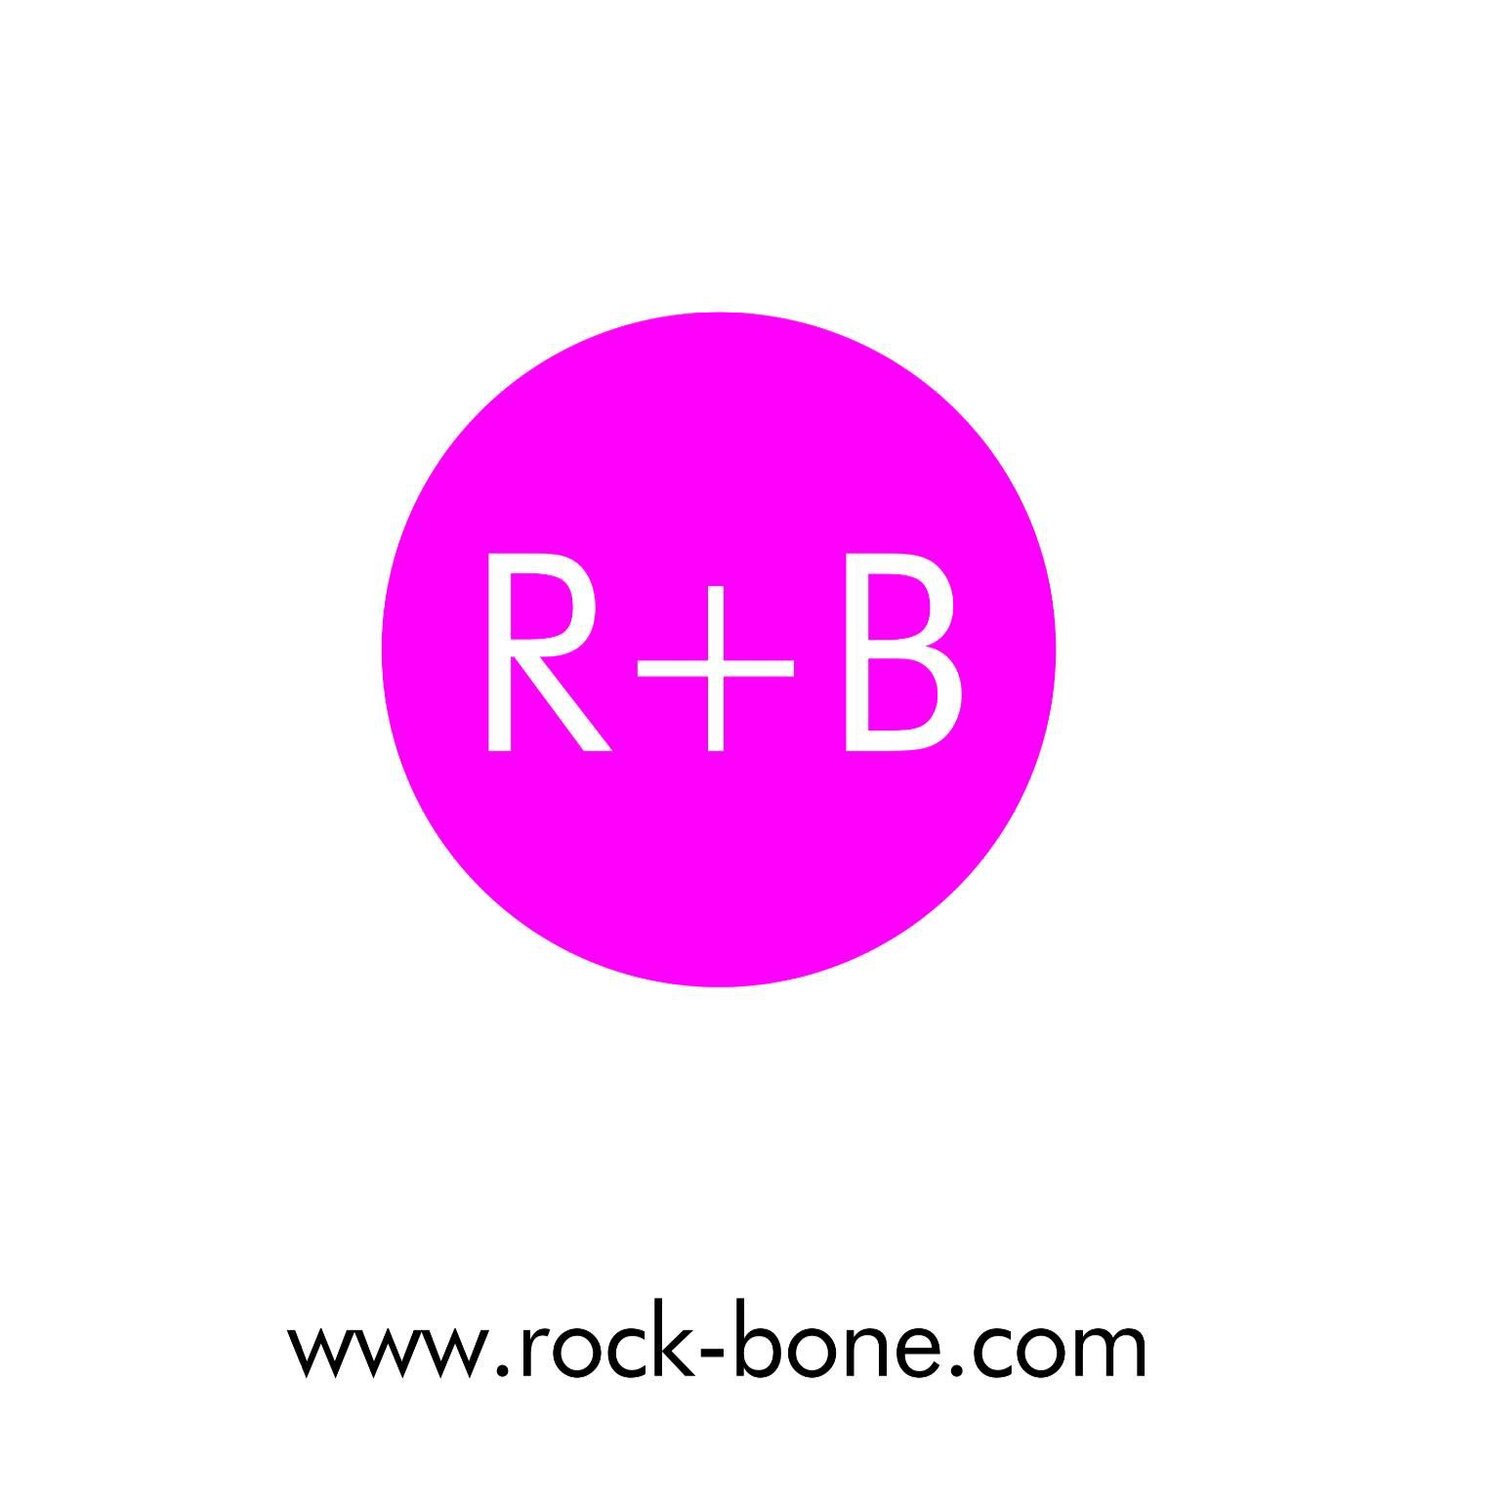 Rock bone logo